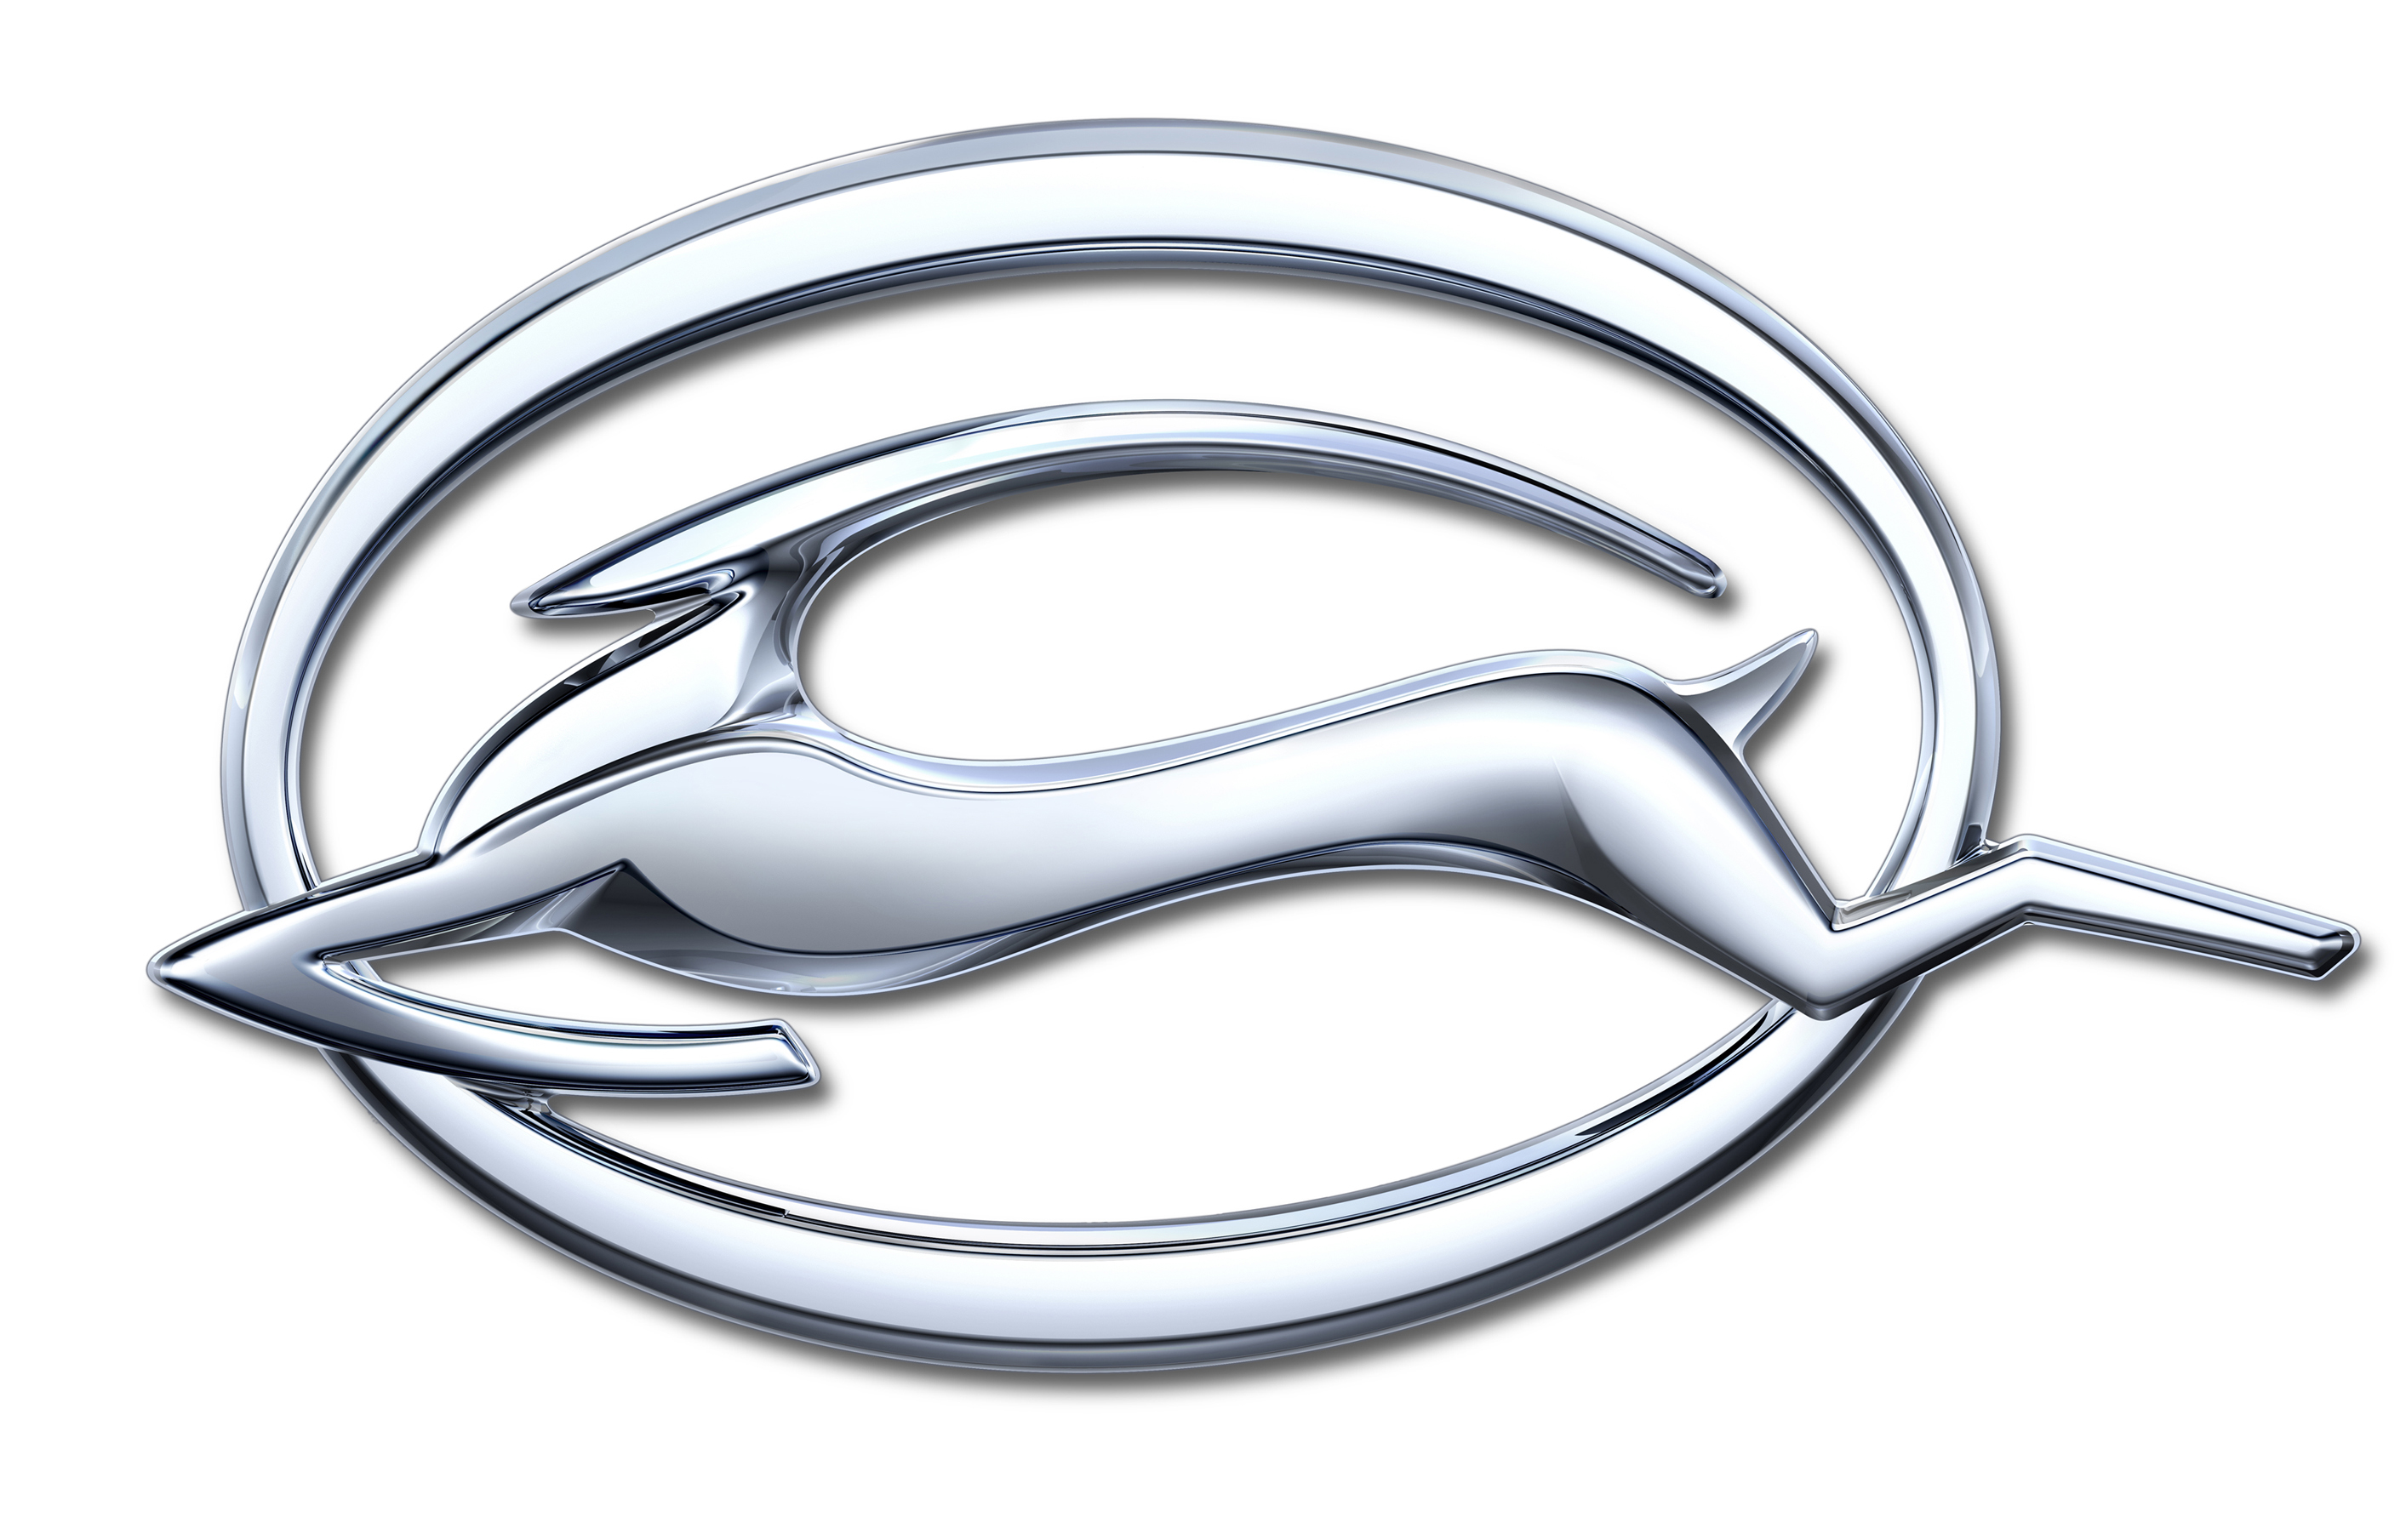 Chevrolet Impala Emblem Wallpaper